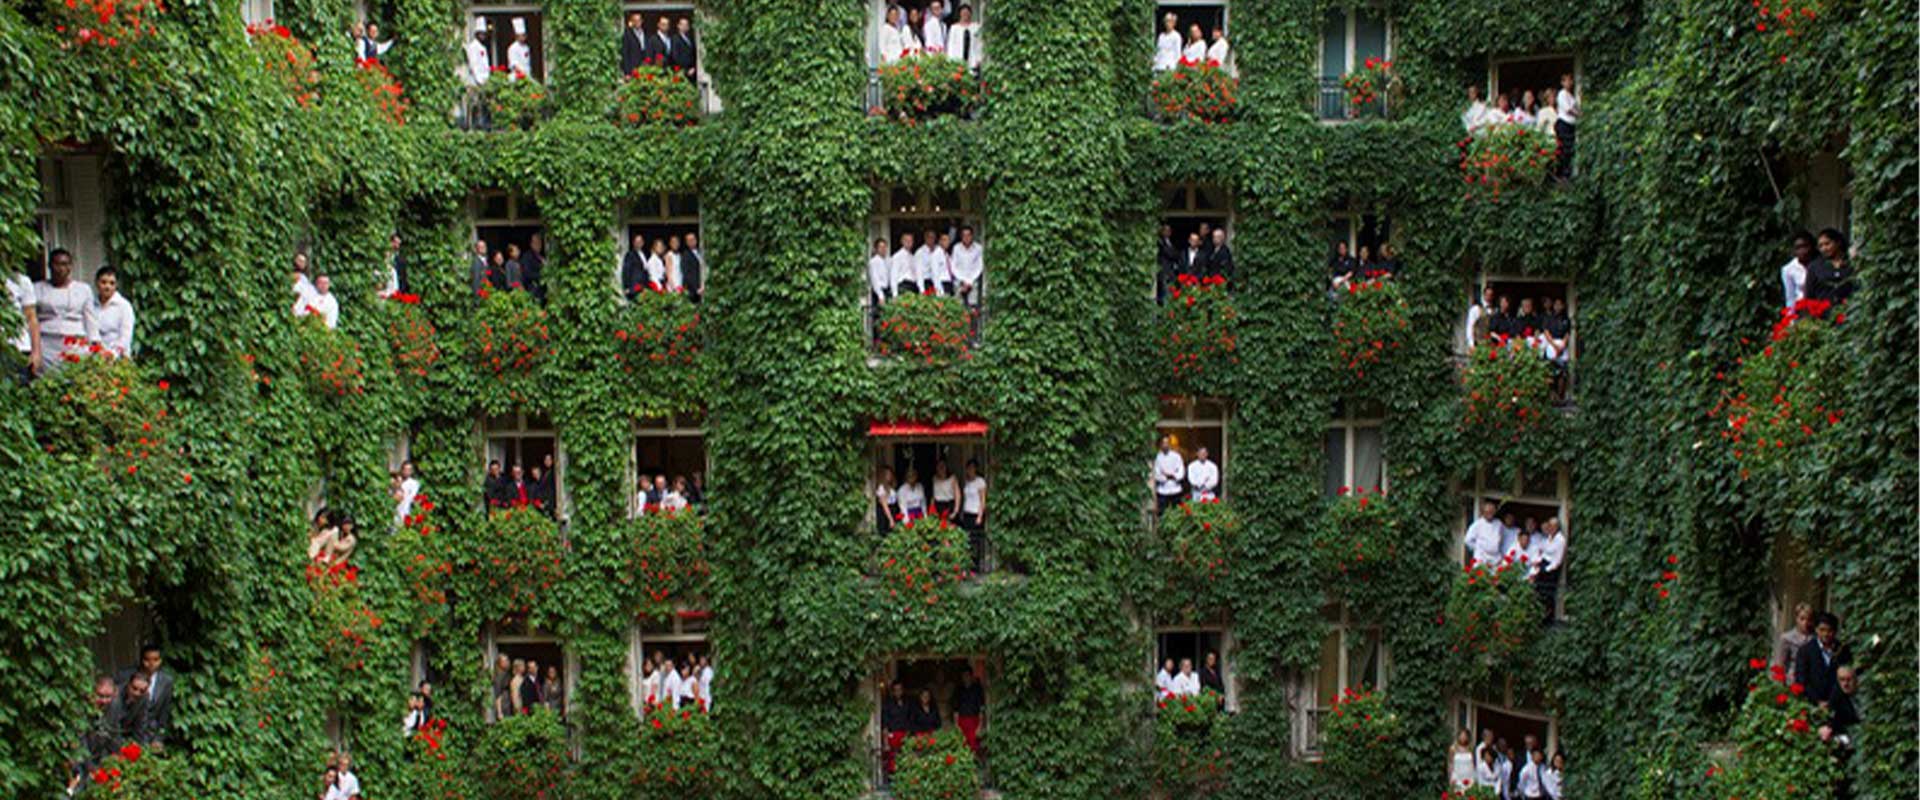 هتلهای سبز حامی محیط زیست و سلامتی نسلهای آینده